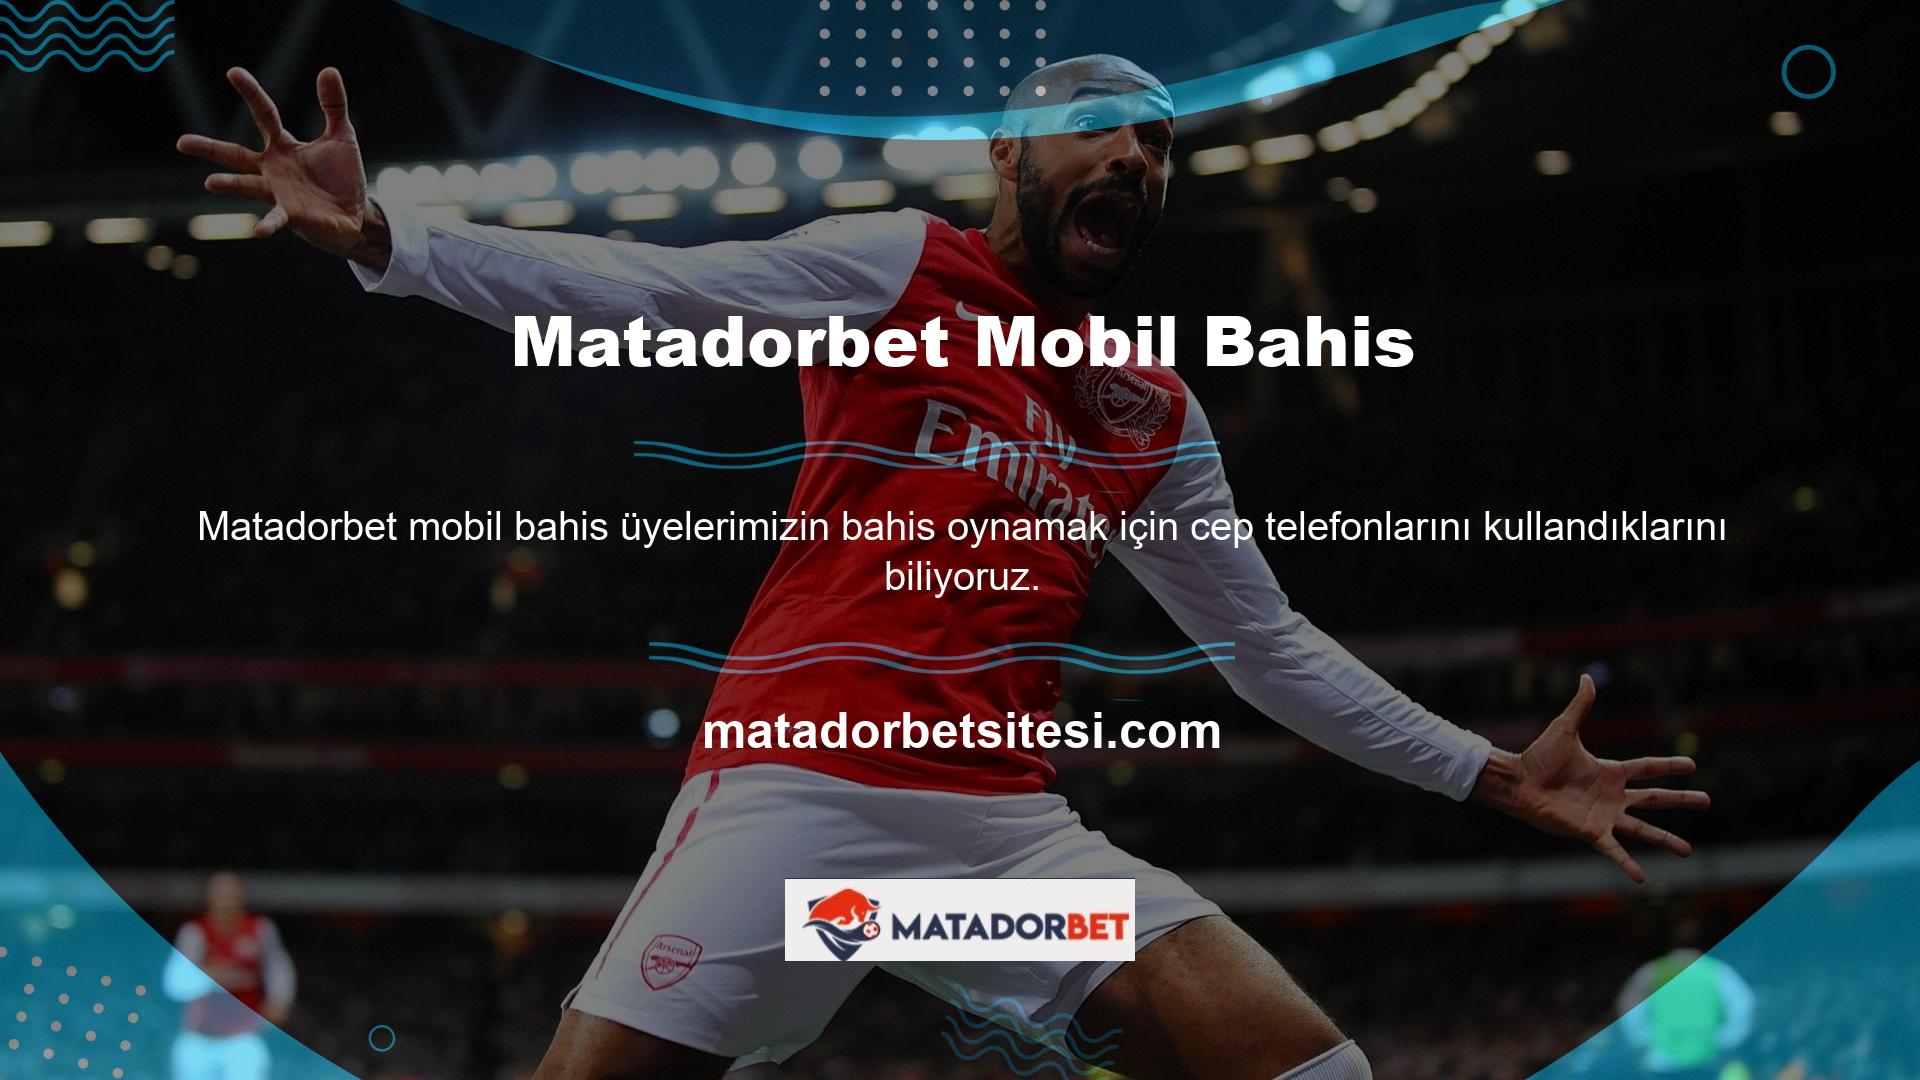 Bu nedenle Matadorbet, Matadorbet Mobile ile bahis oynamak için eşsiz bir fırsat sunuyor